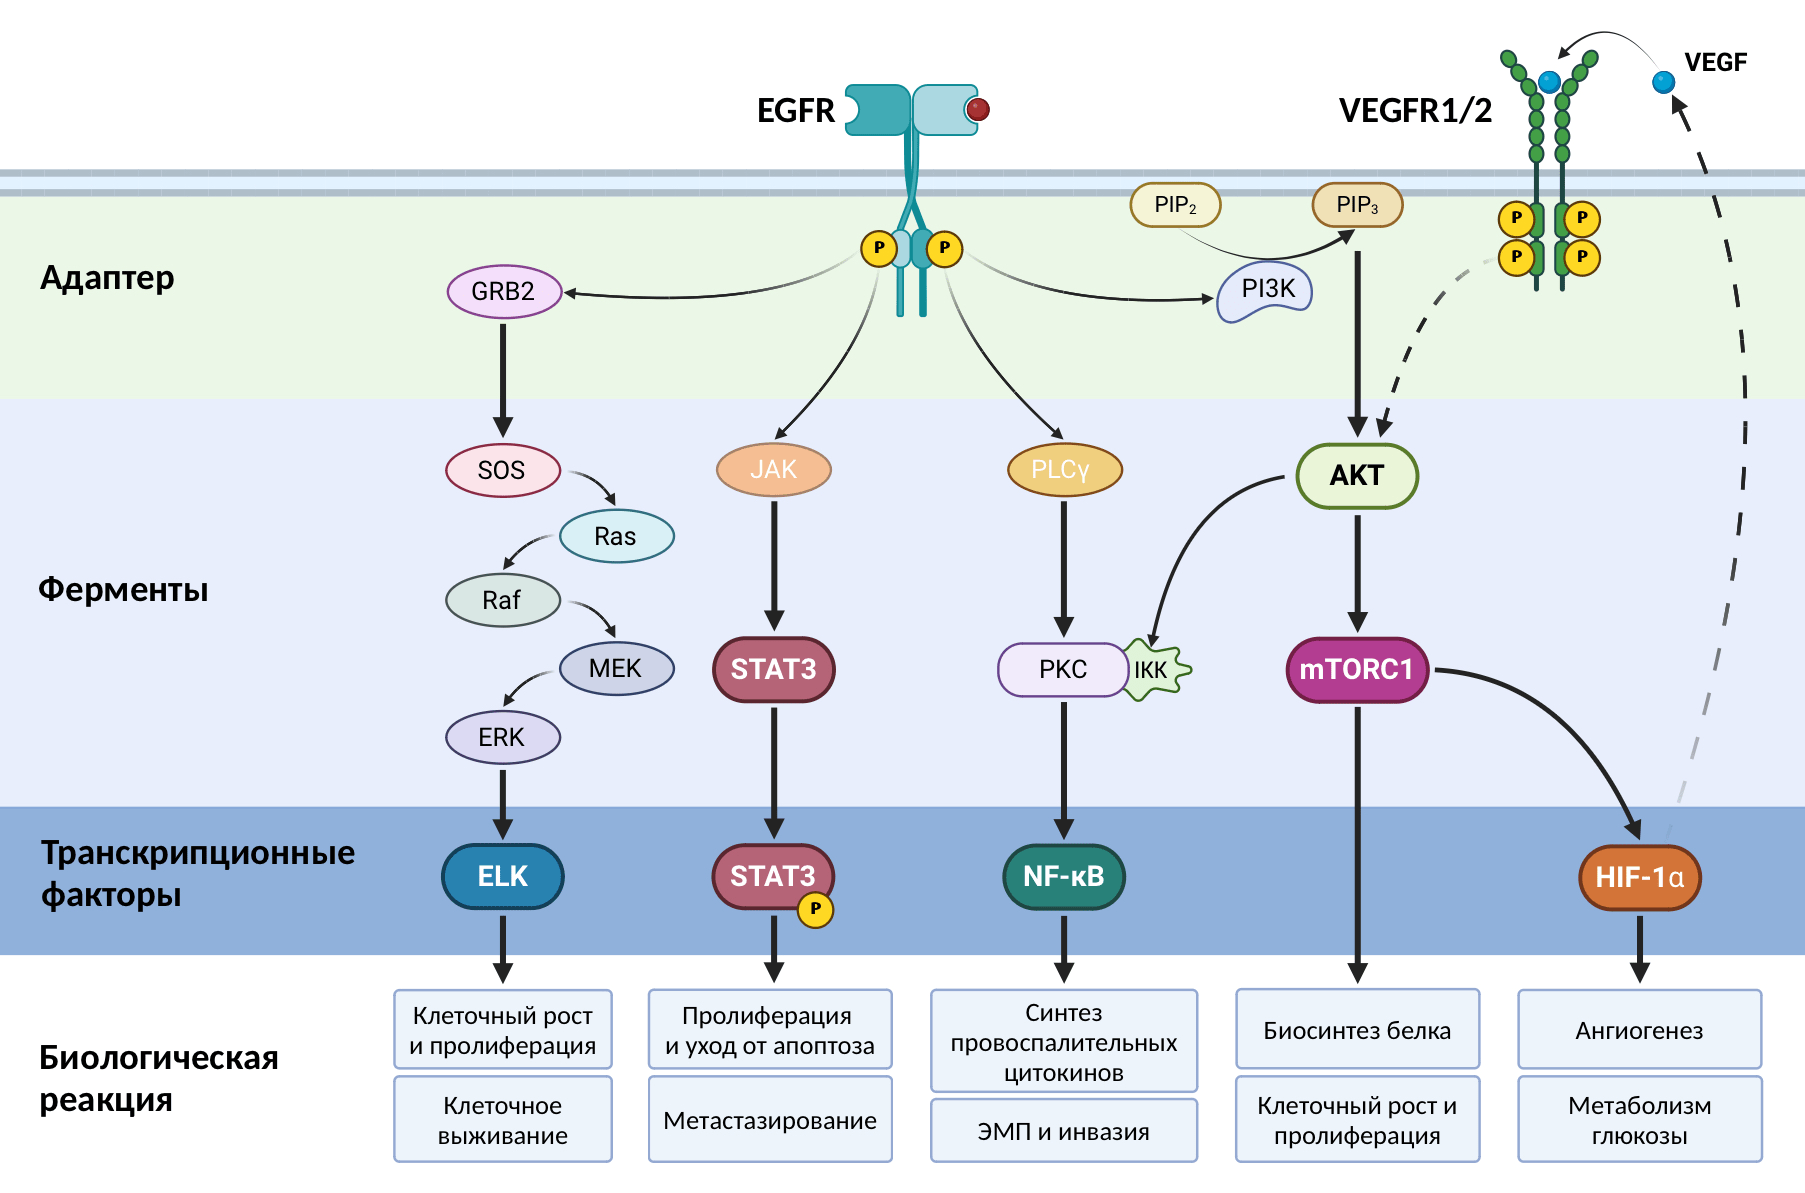 Активация рецептора EGFR запускает внутриклеточную передачу сигнала по путям Ras/Raf/MEK/ERK, JAK/STAT3, PI3K/AKT/mTOR, NF-κB и многим другим